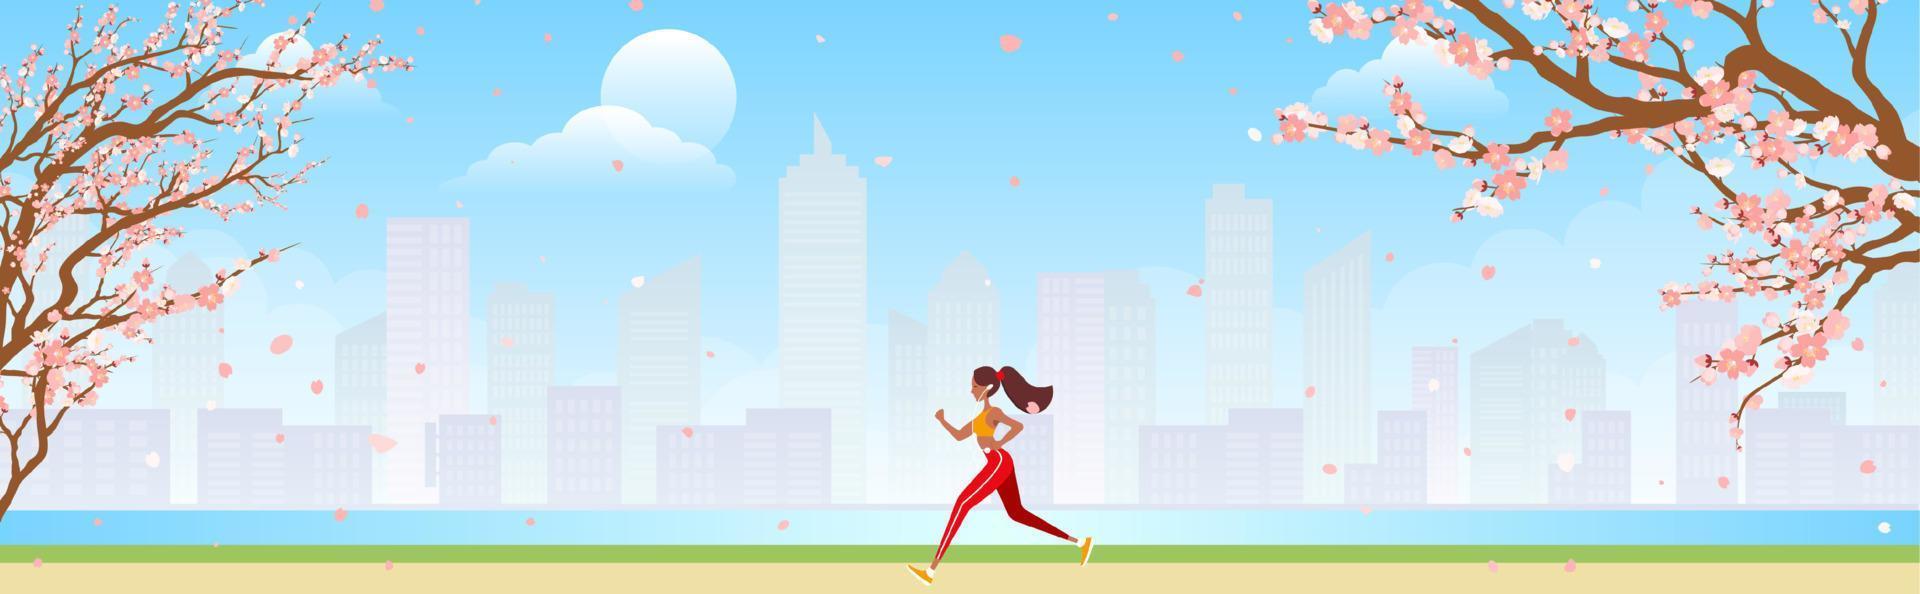 loper opleiding buitenshuis. sportief meisje rennen naar beneden stad park traject in ochtend. vector illustratie voor Gezondheid, actief levensstijl, ochtend- oefening, jogging concept.